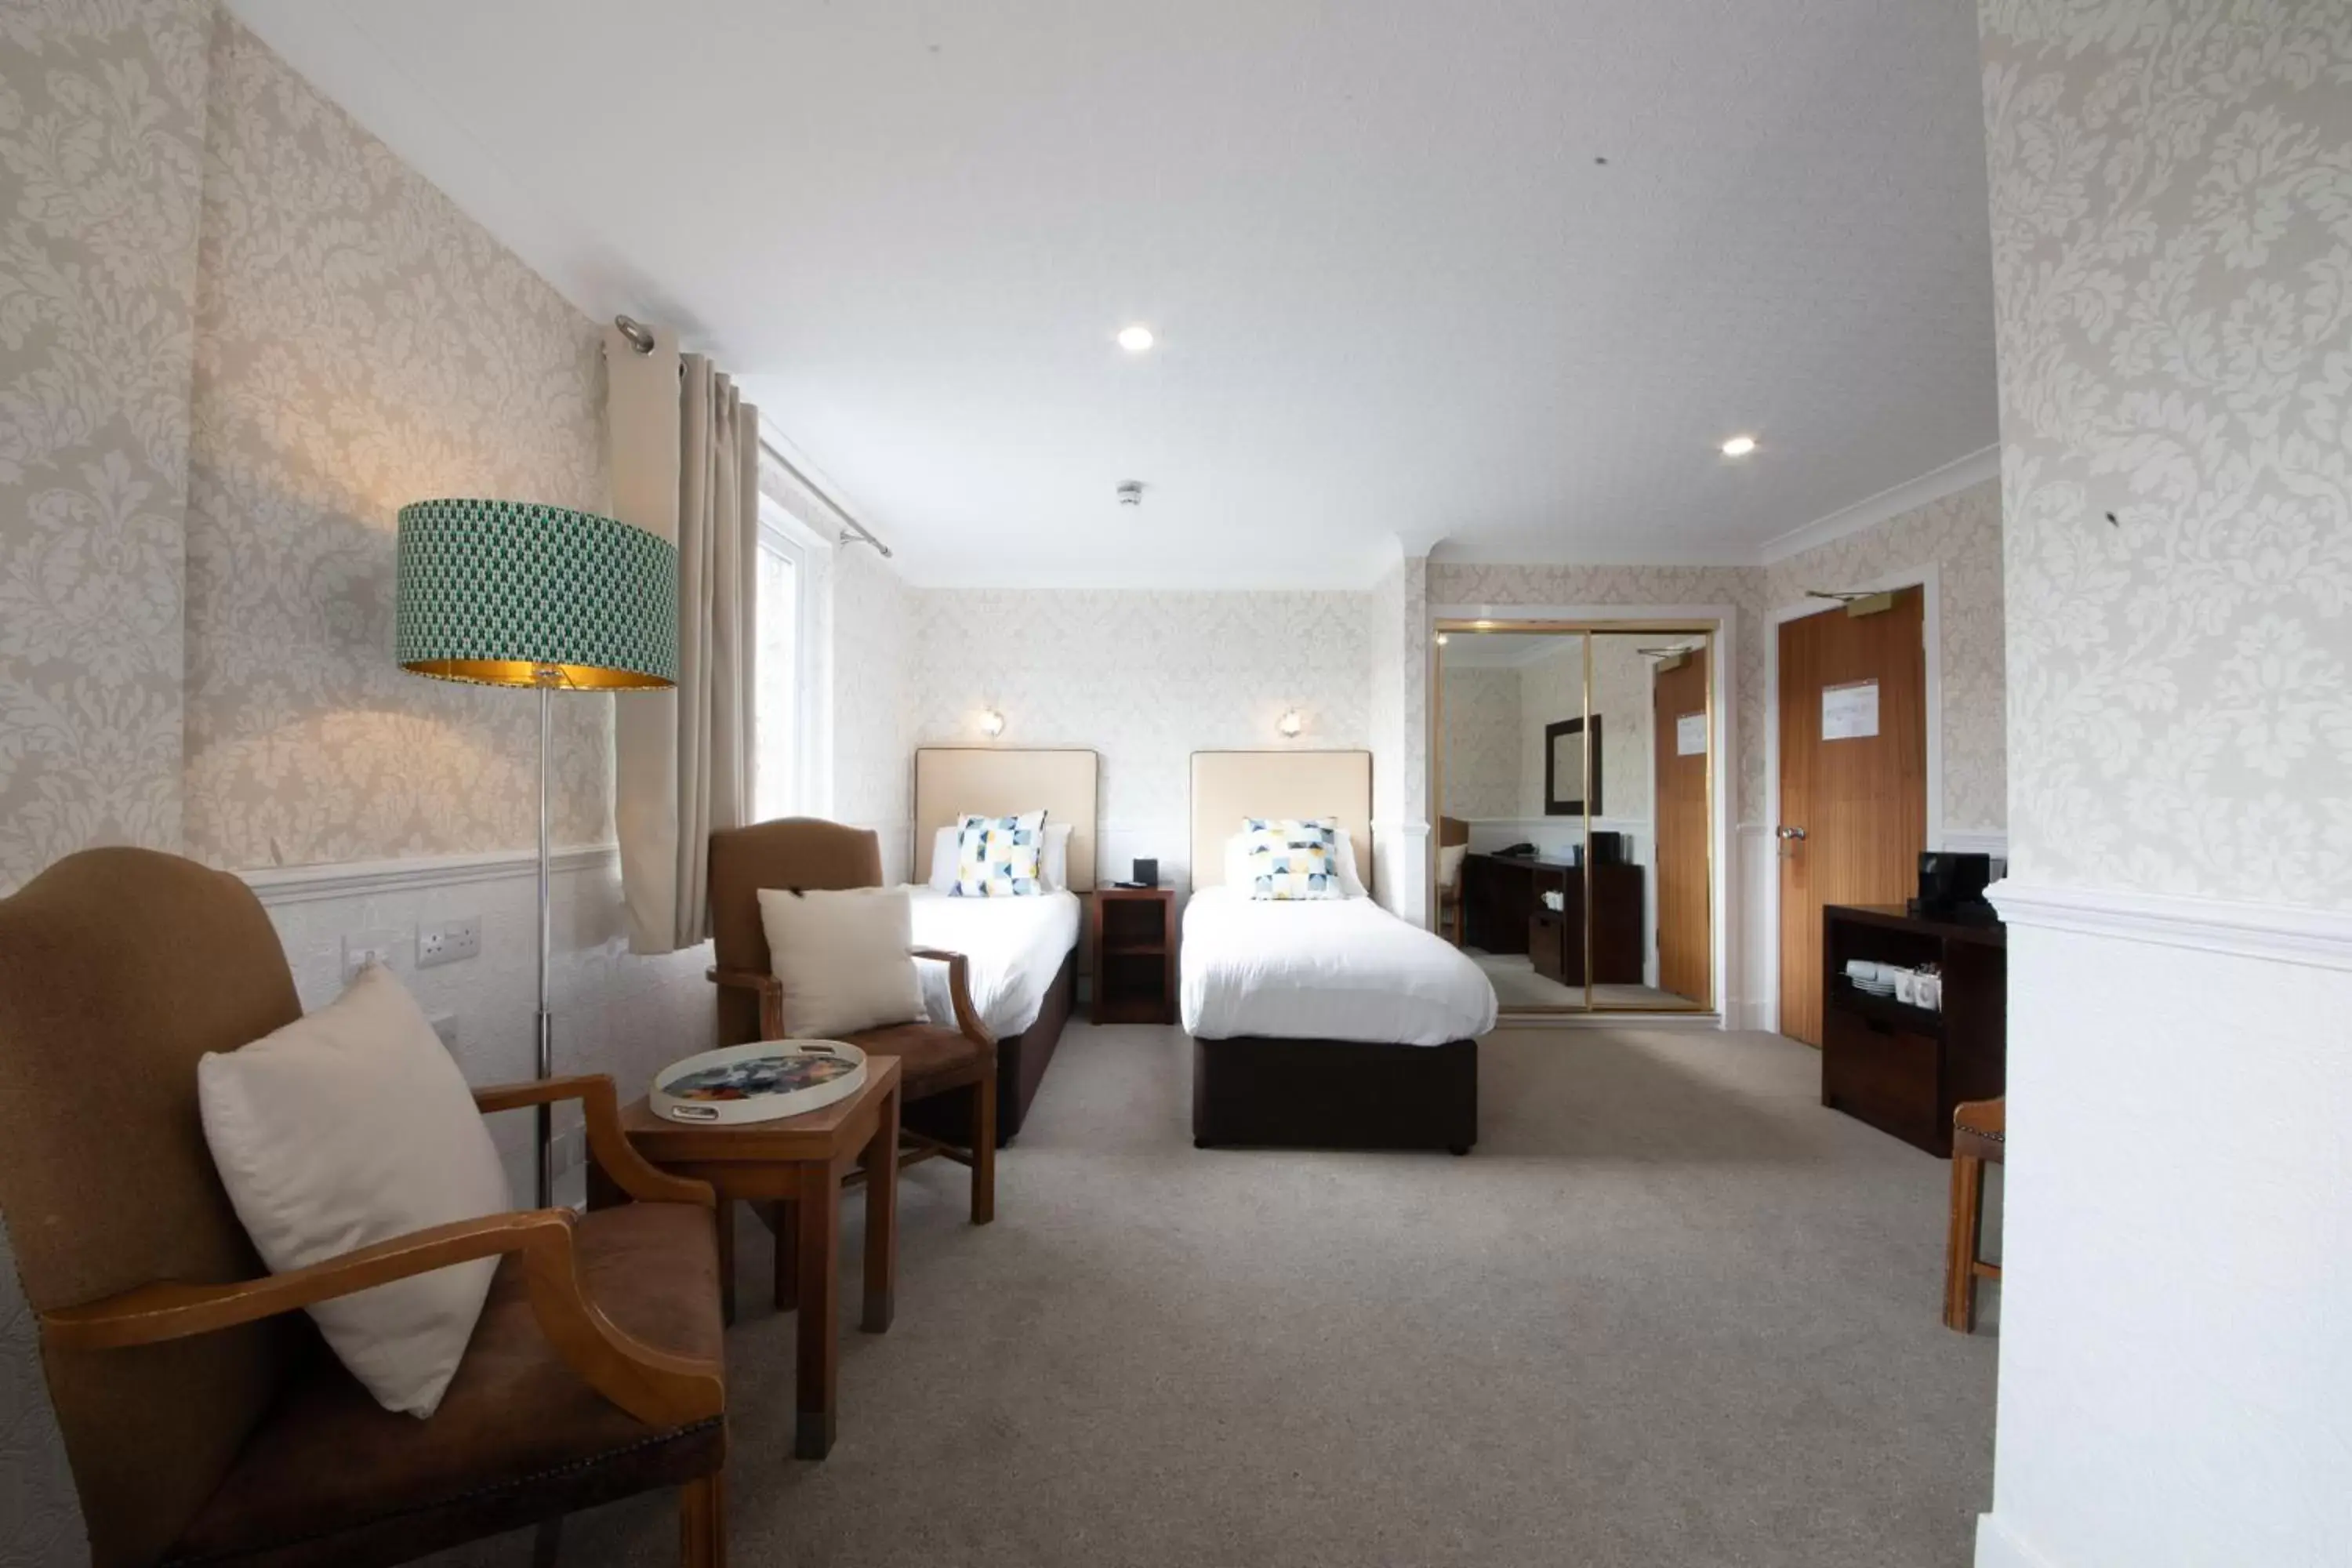 Bedroom in Scotland's Spa Hotel